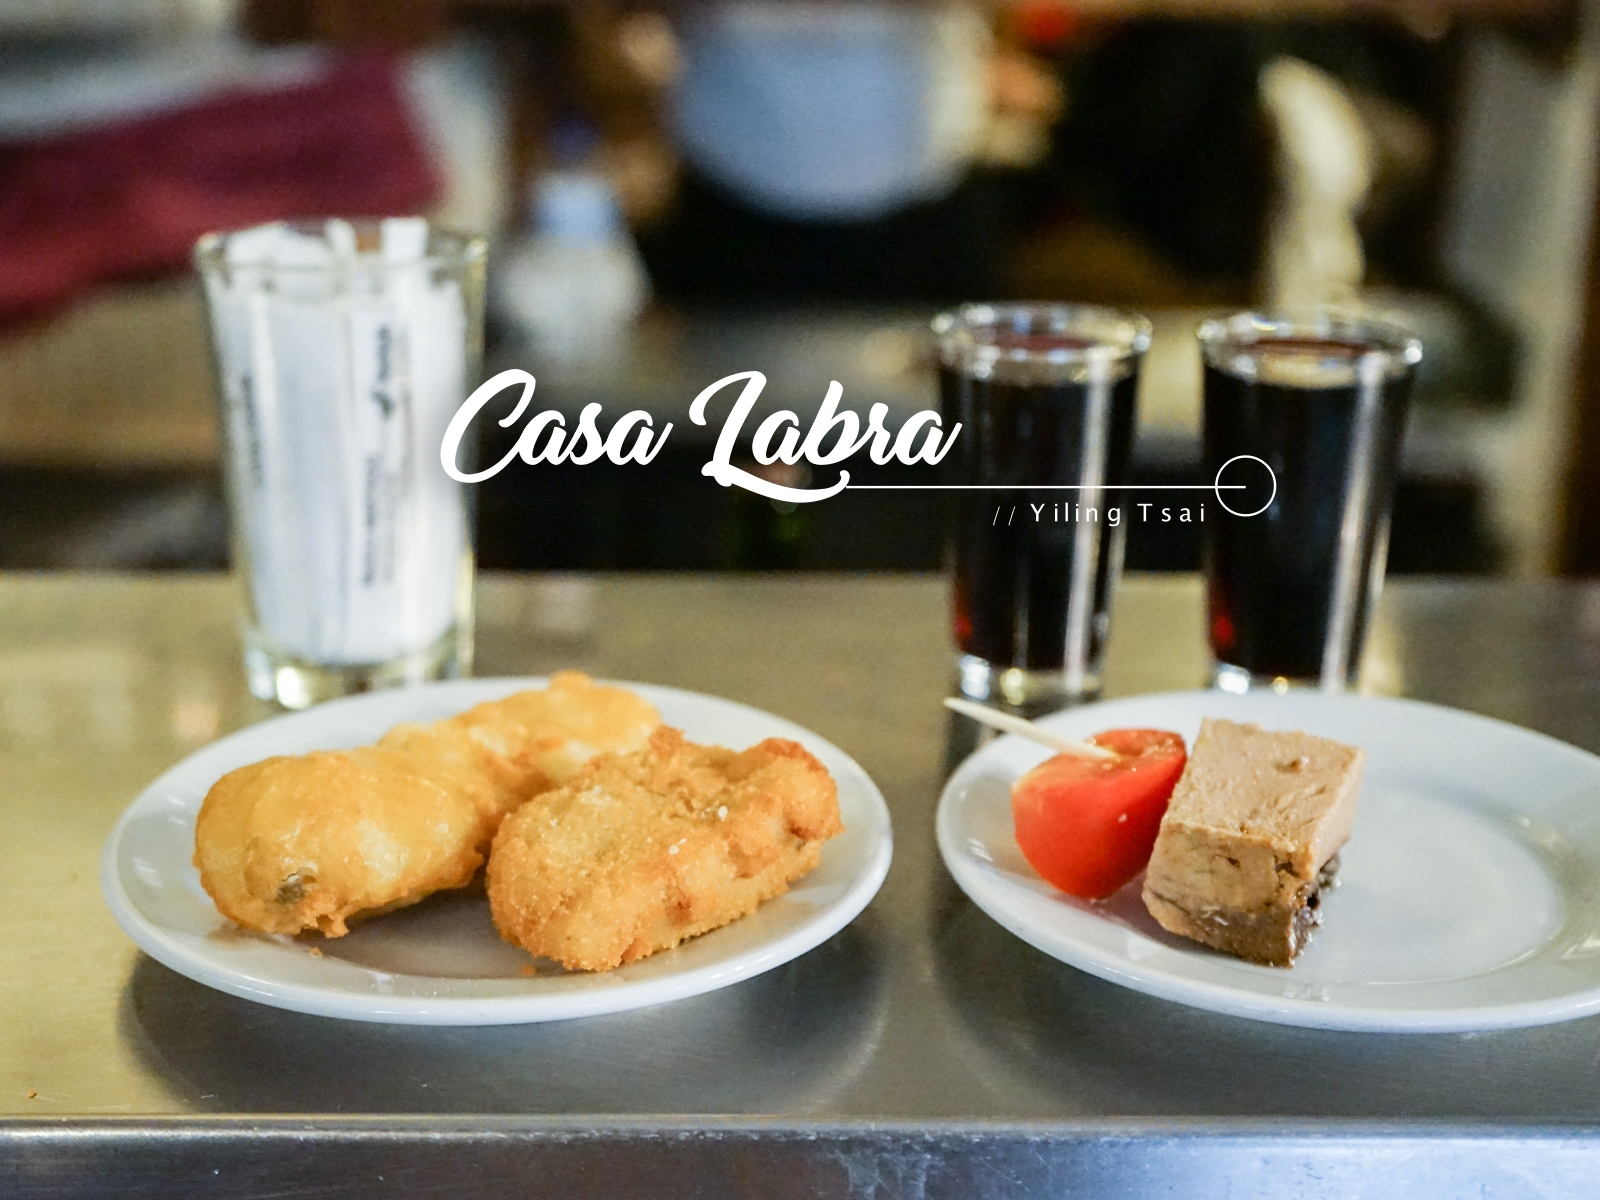 西班牙馬德里美食推薦 Casa Labra 好吃炸鱈魚小酒館